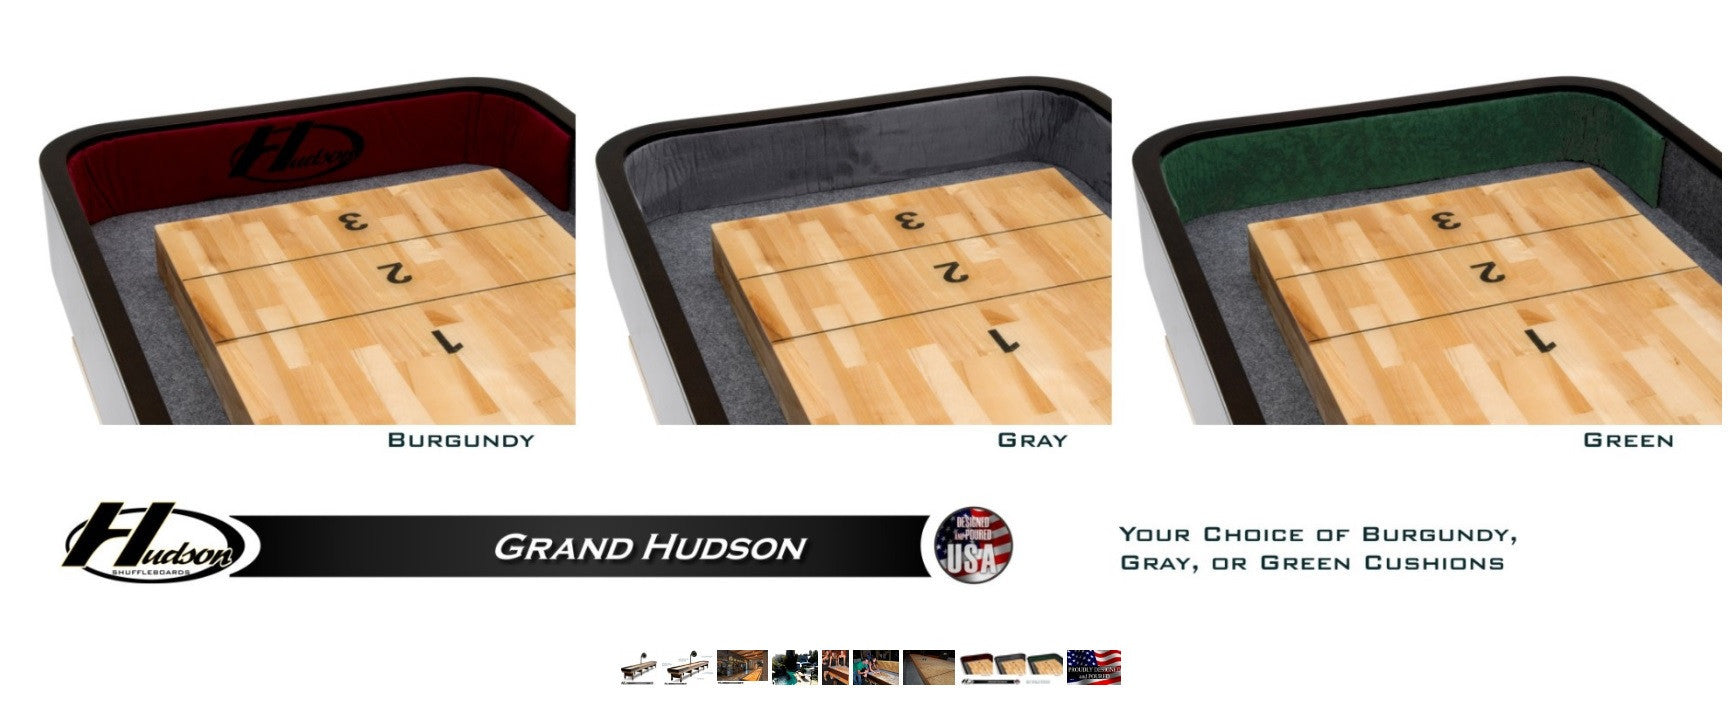 Hudson 16' Grand Hudson Shuffleboard